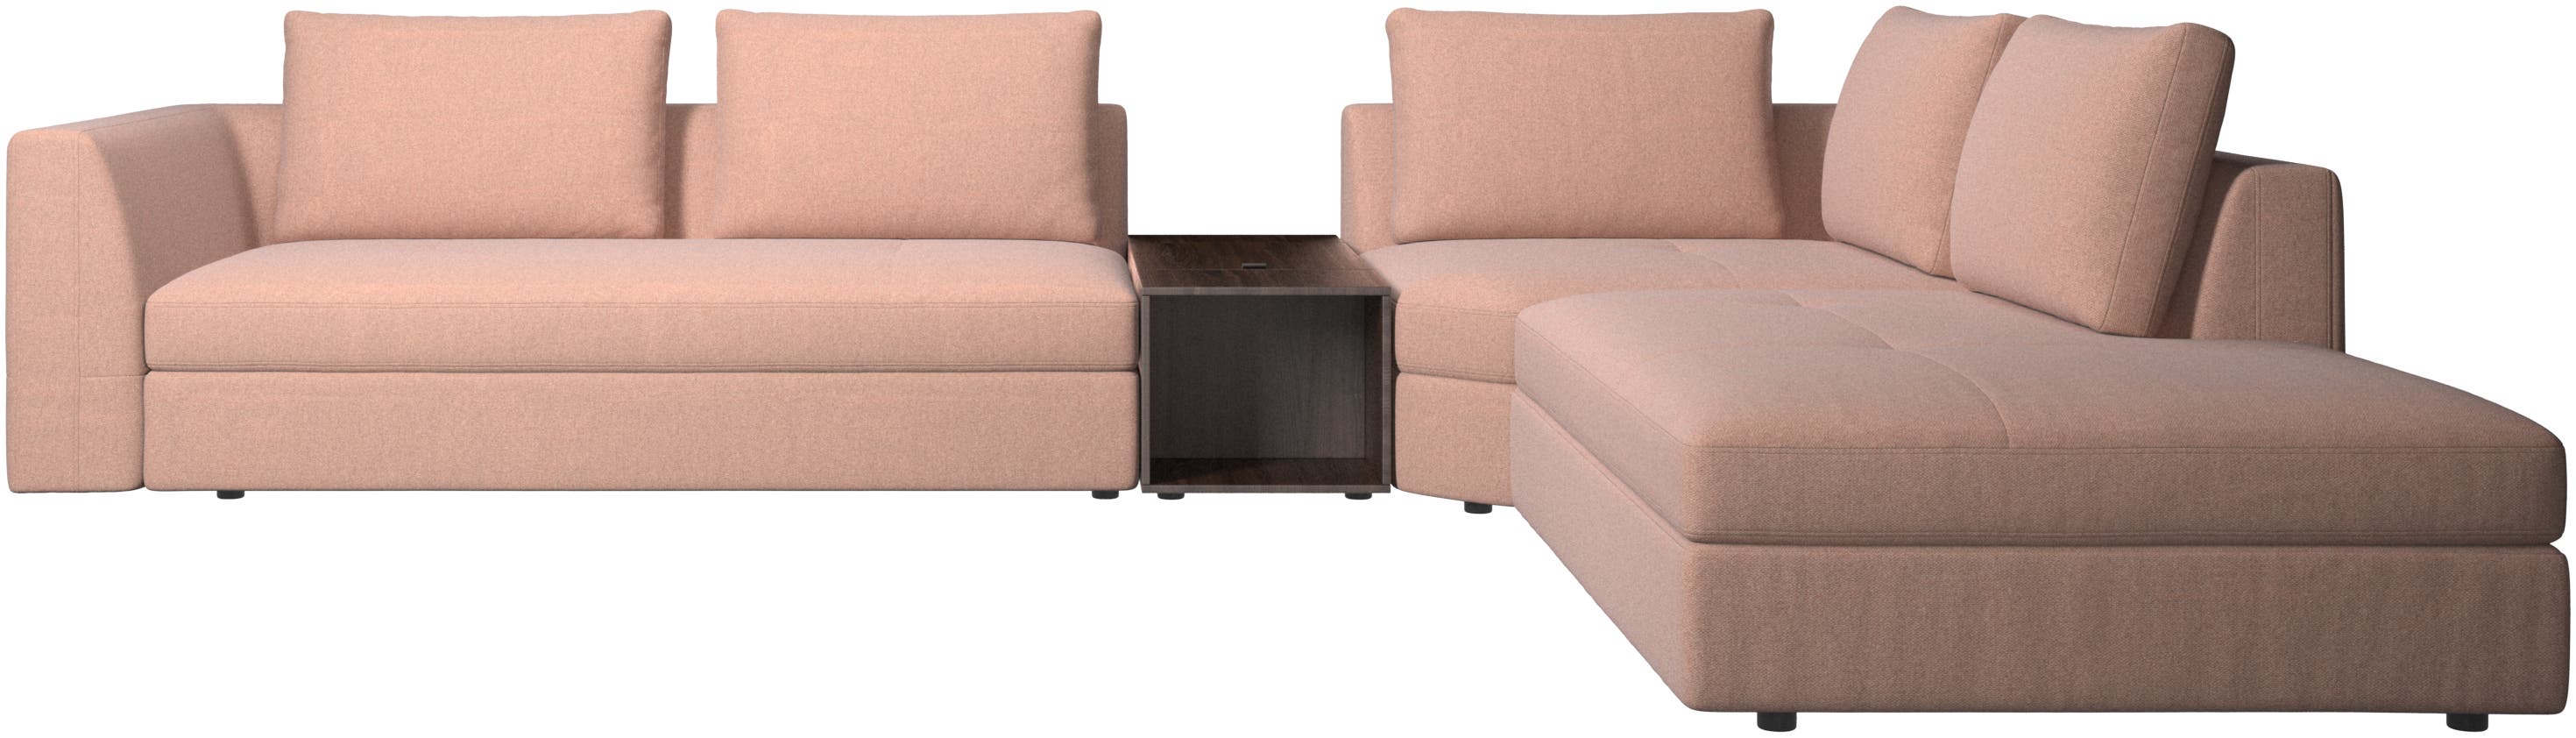 Sofa narożna Bergamo z szezlongiem i pufem ze schowkiem